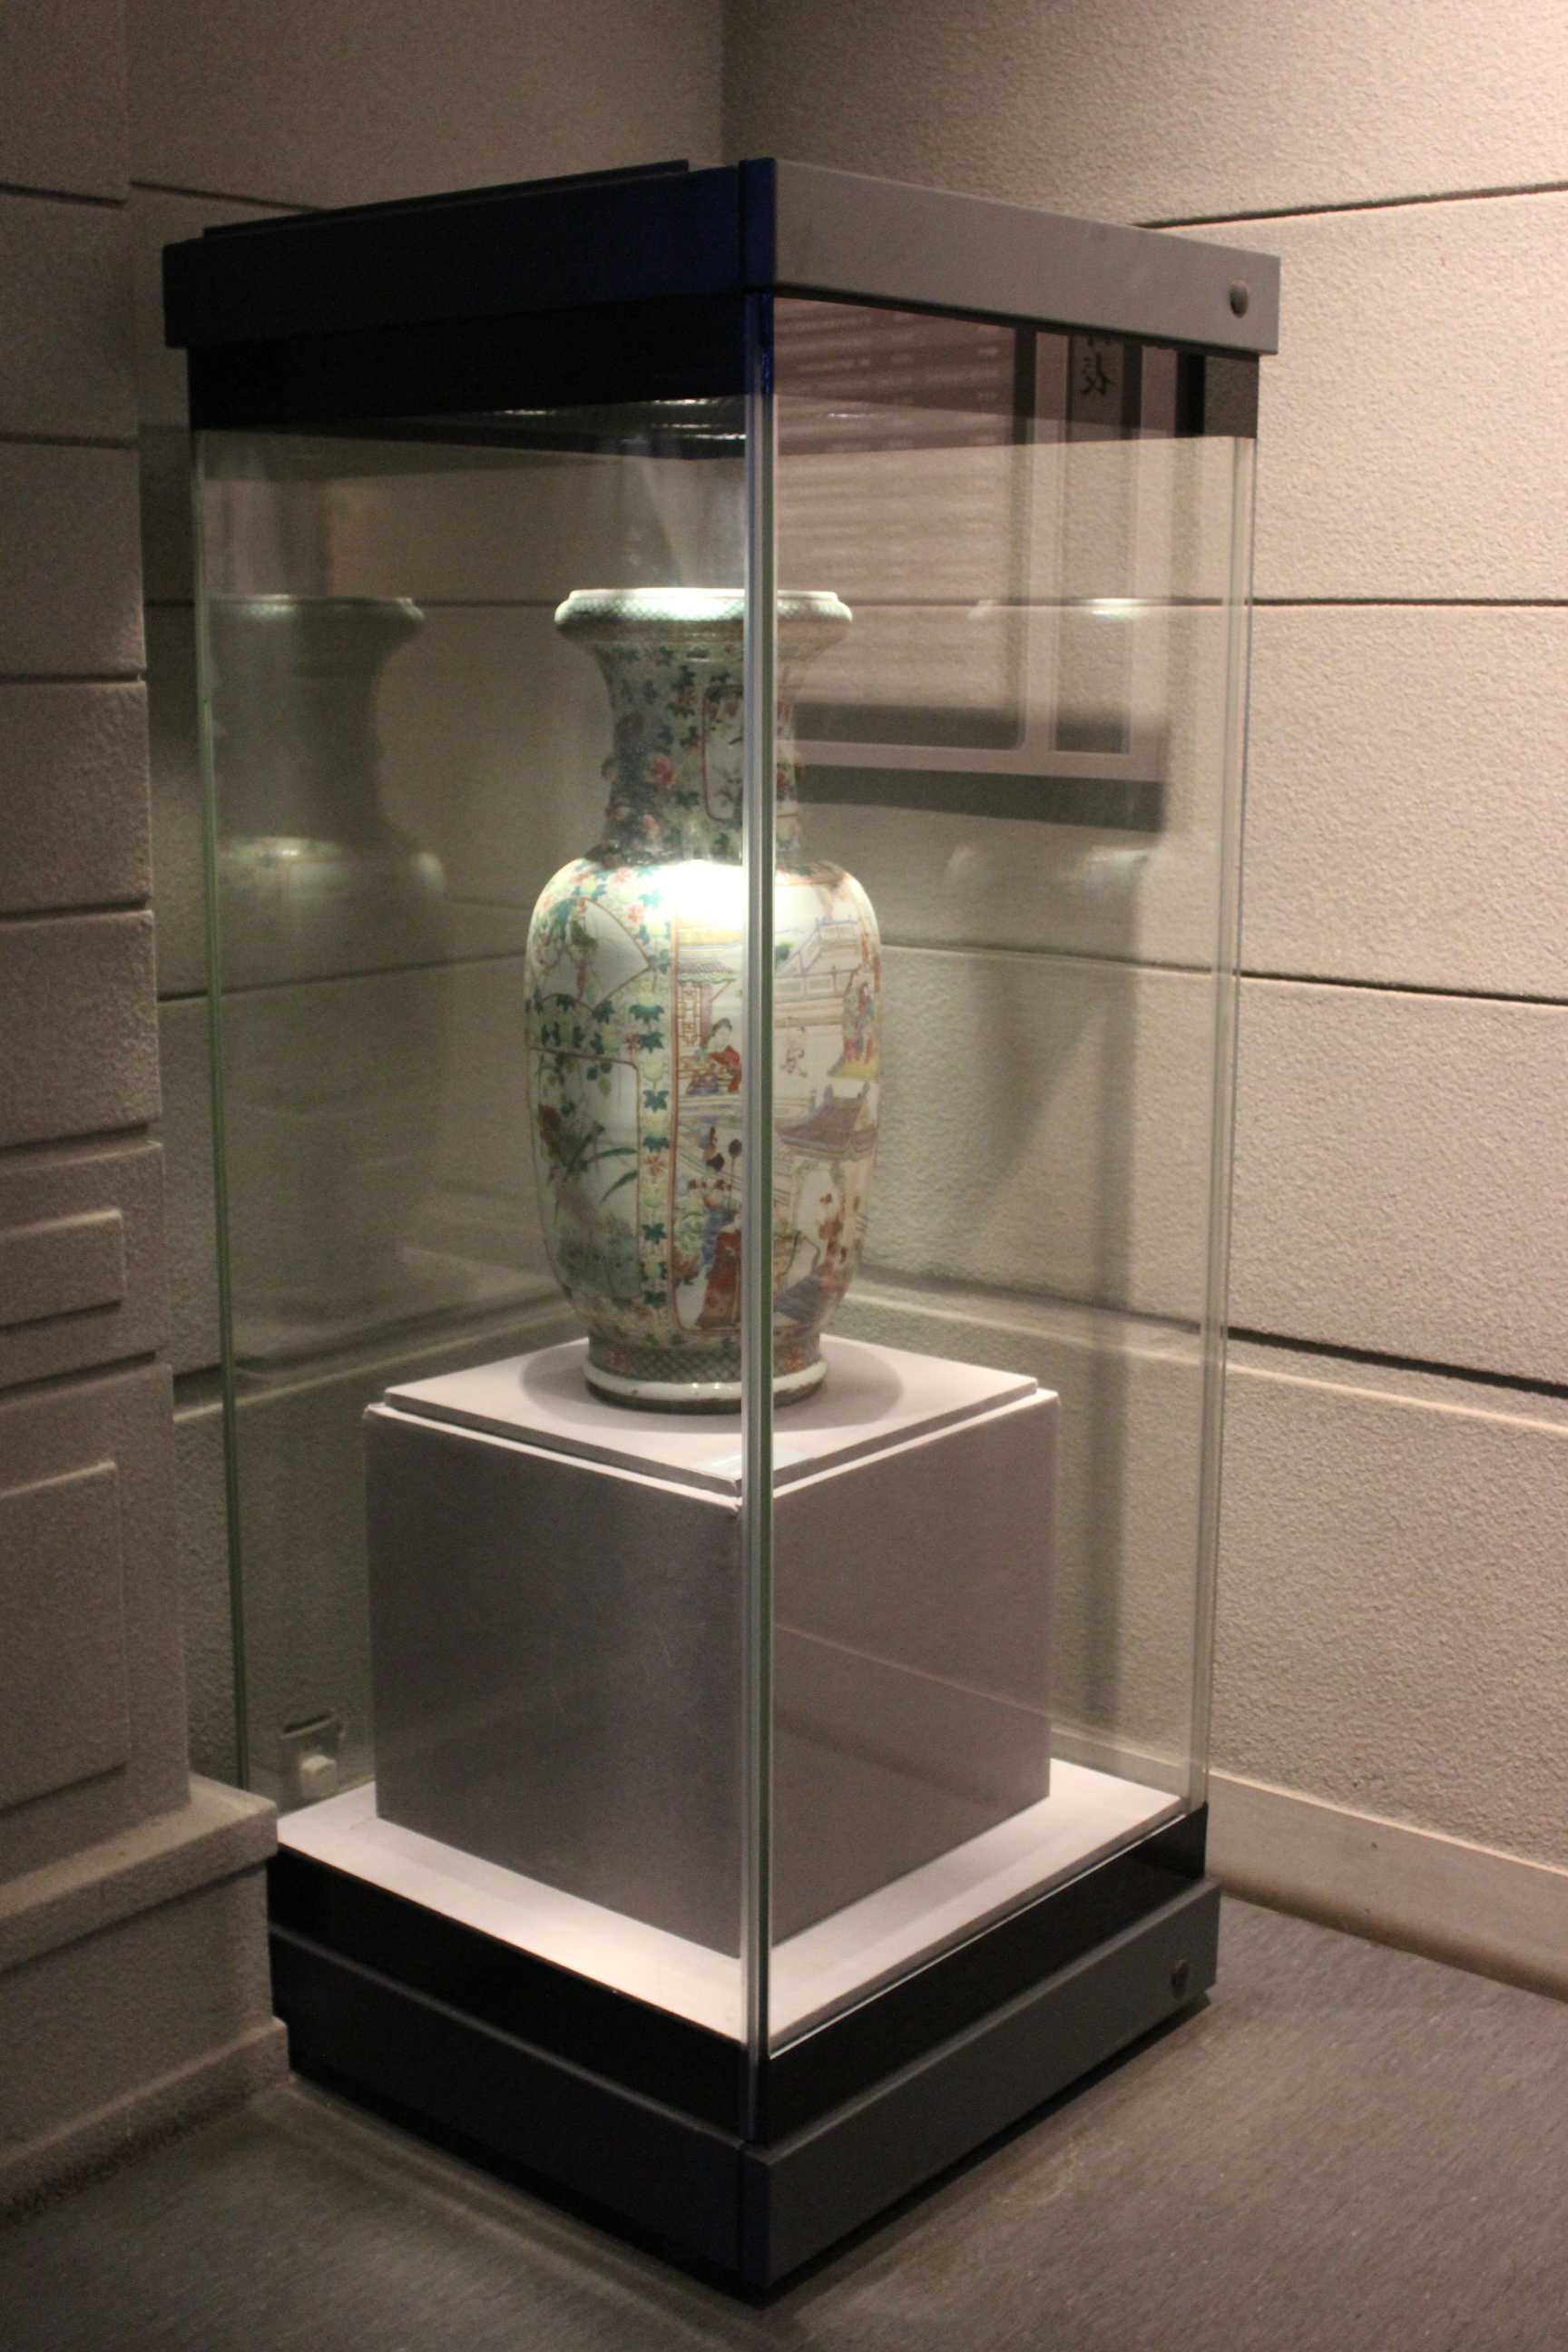 博物馆独立展示陈列柜样品橱窗展示柜古玩古董珠宝展柜玻璃木烤漆